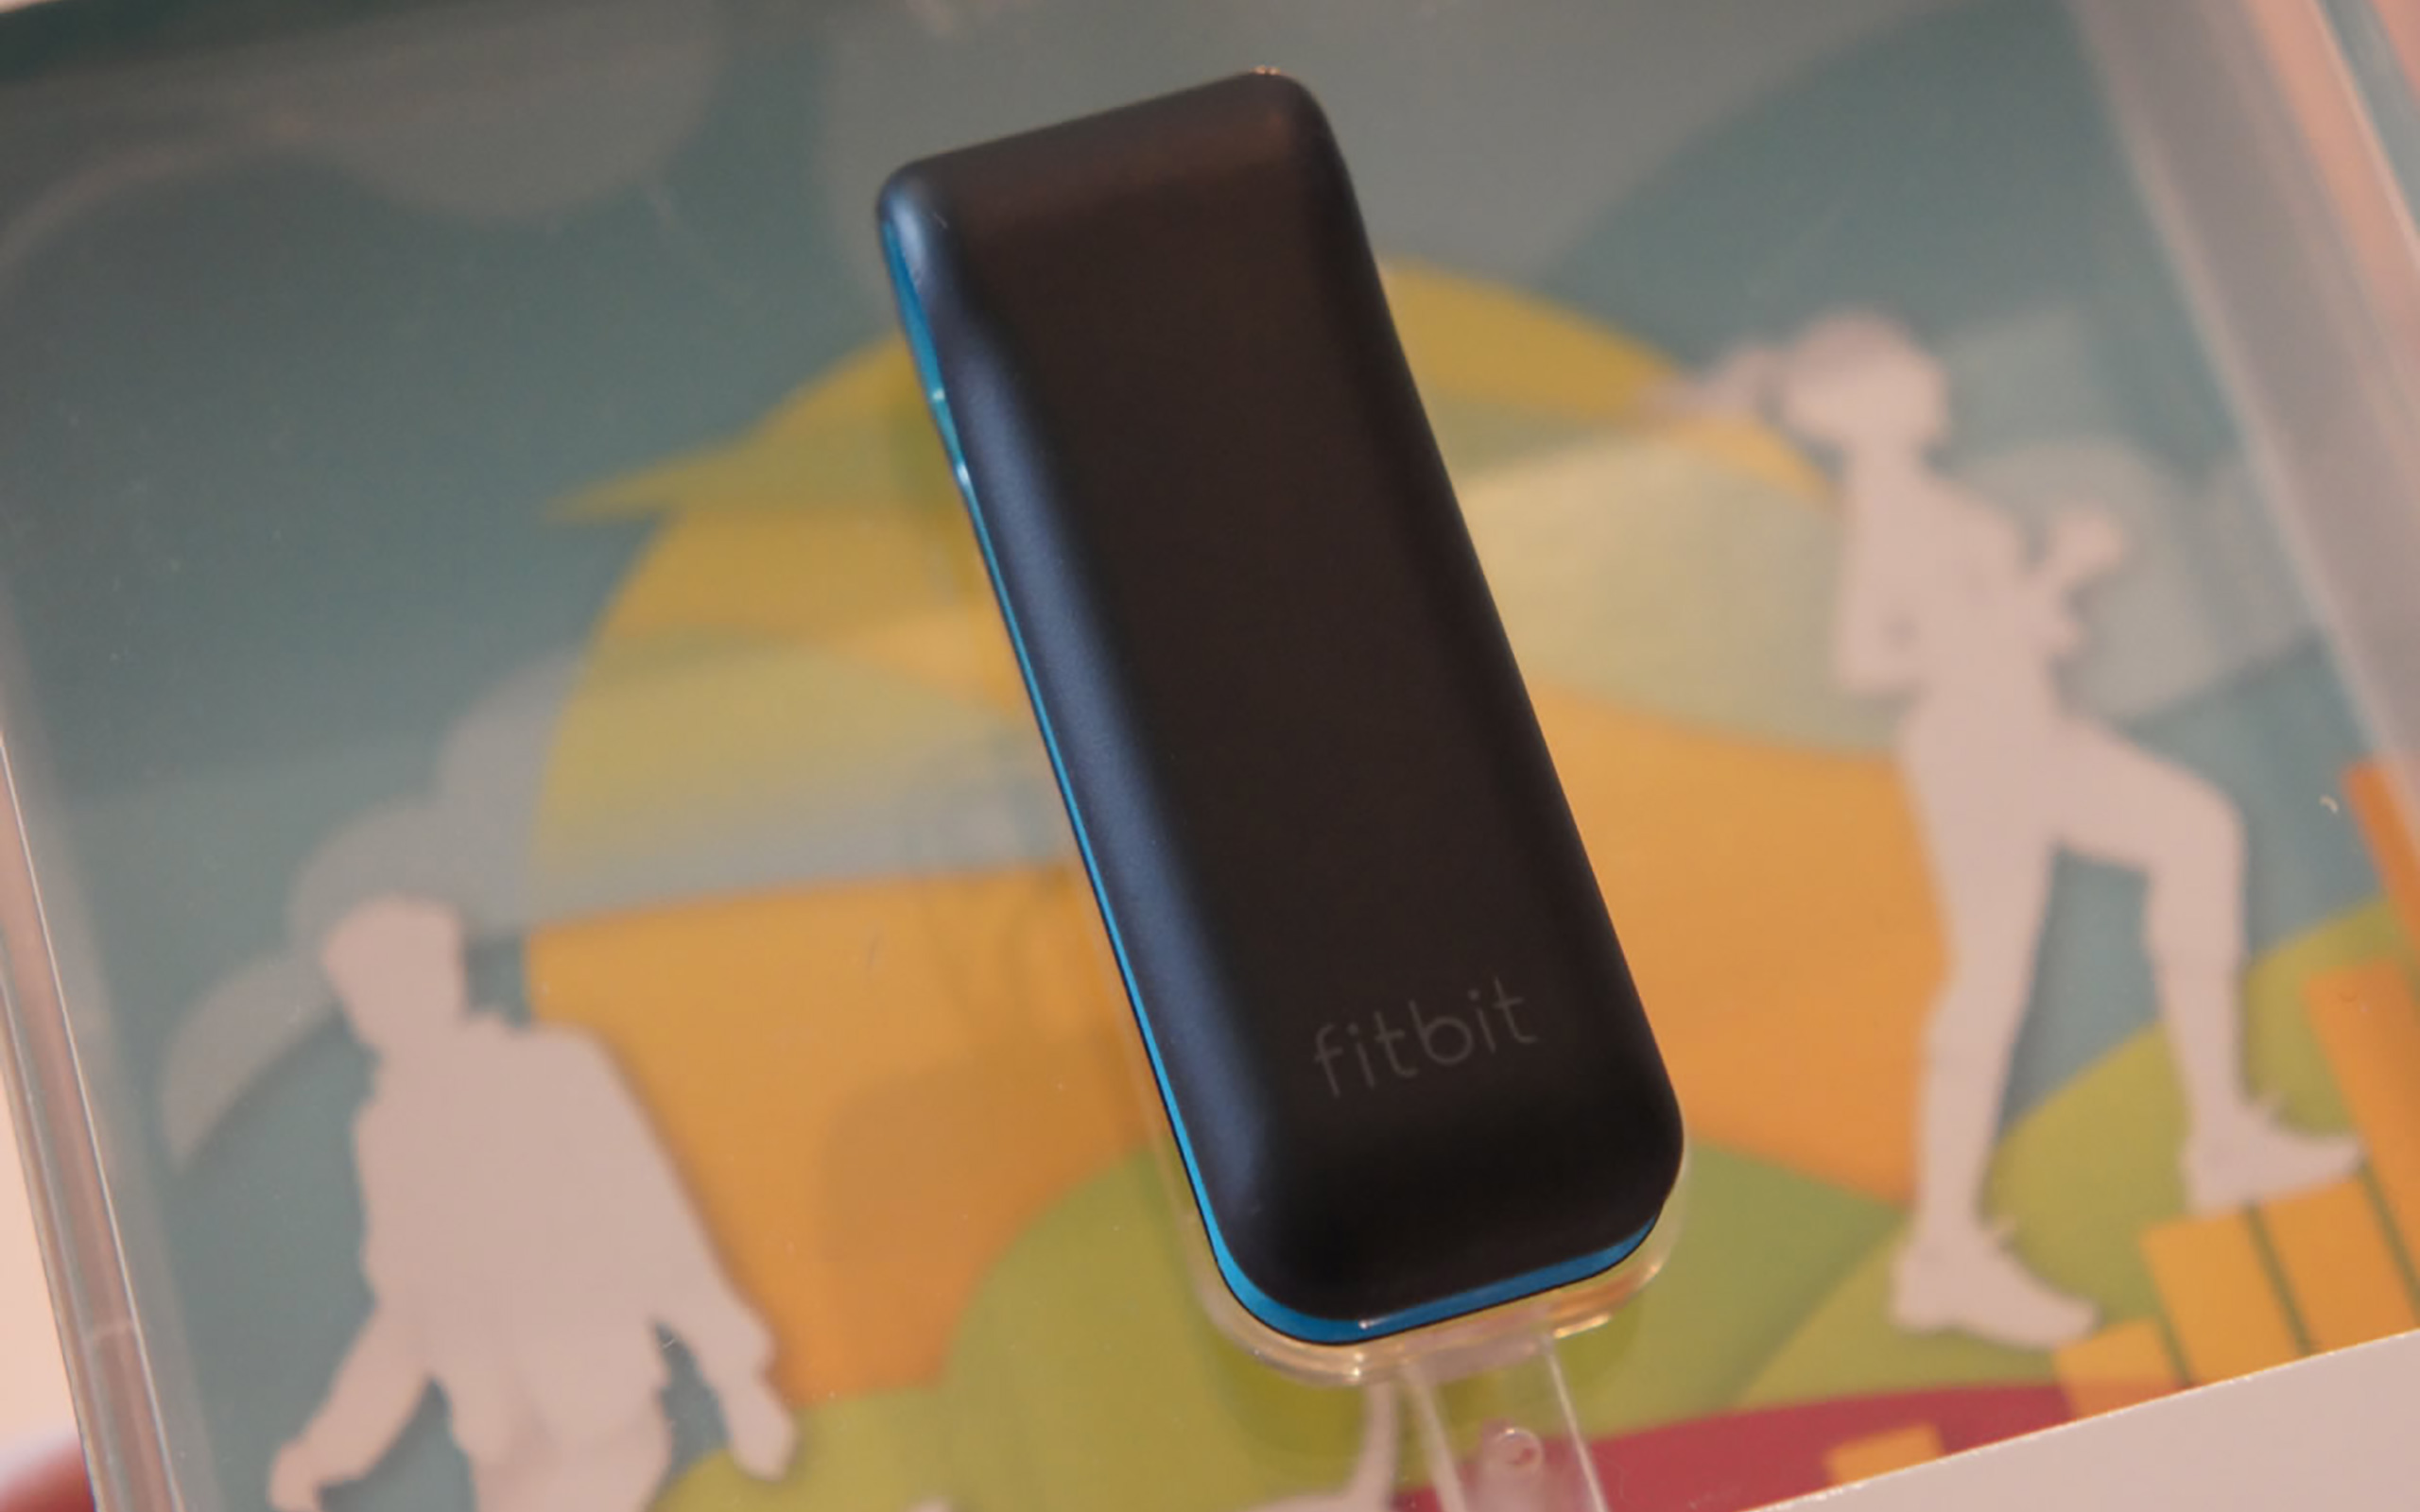 Fitbit Tracker